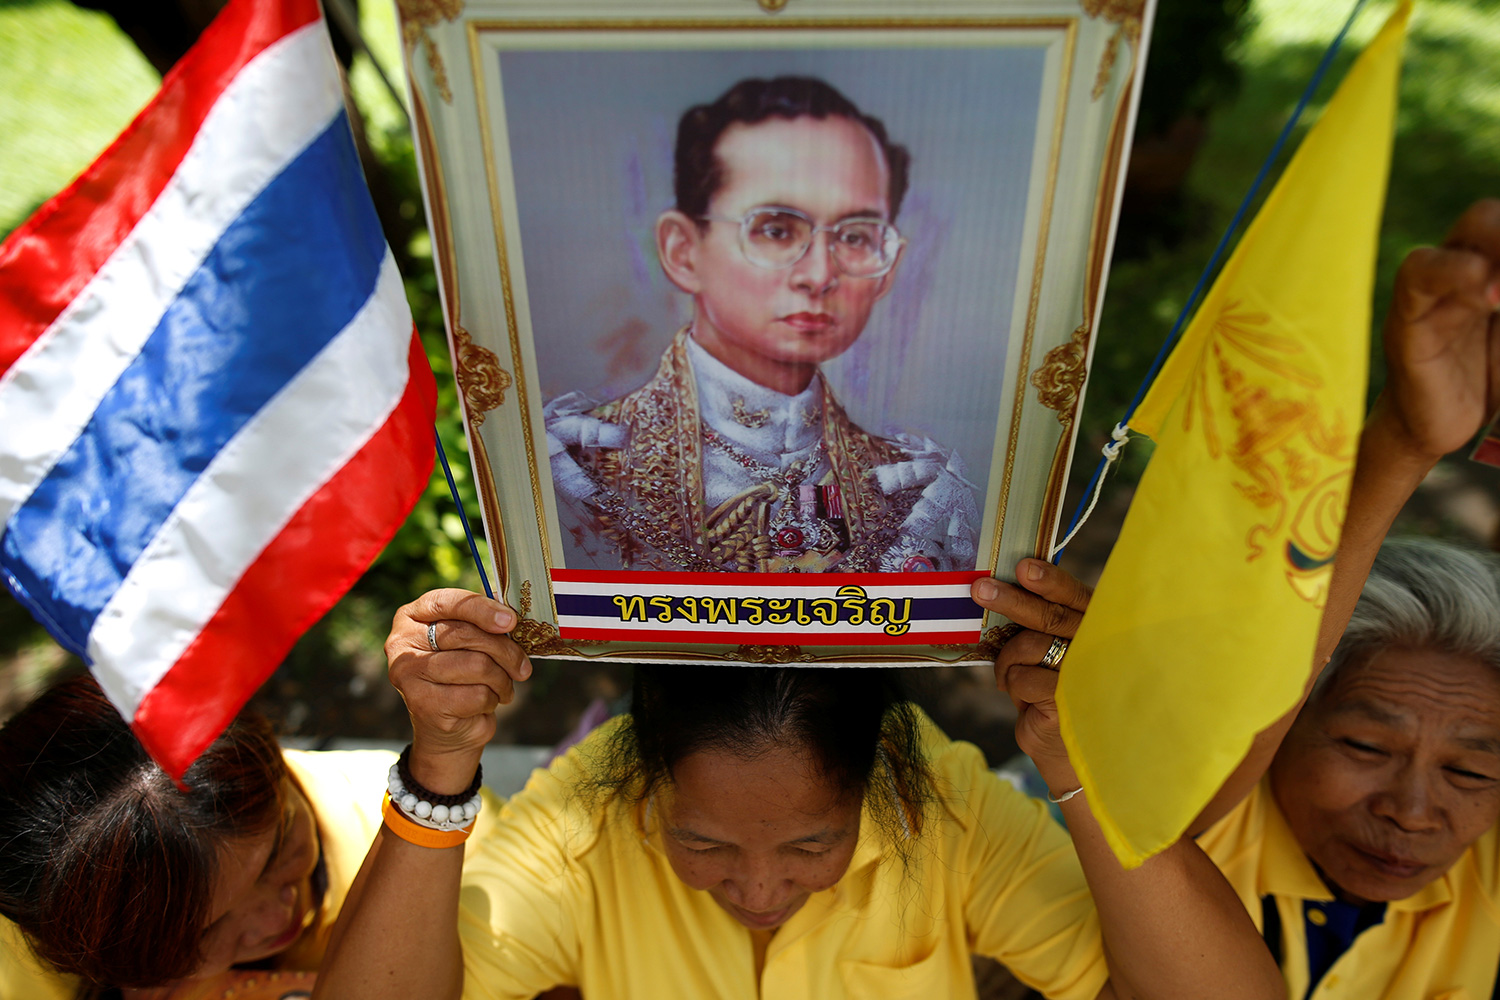 El rey tailandés celebra 70 años en el trono, el reinado más largo del mundo